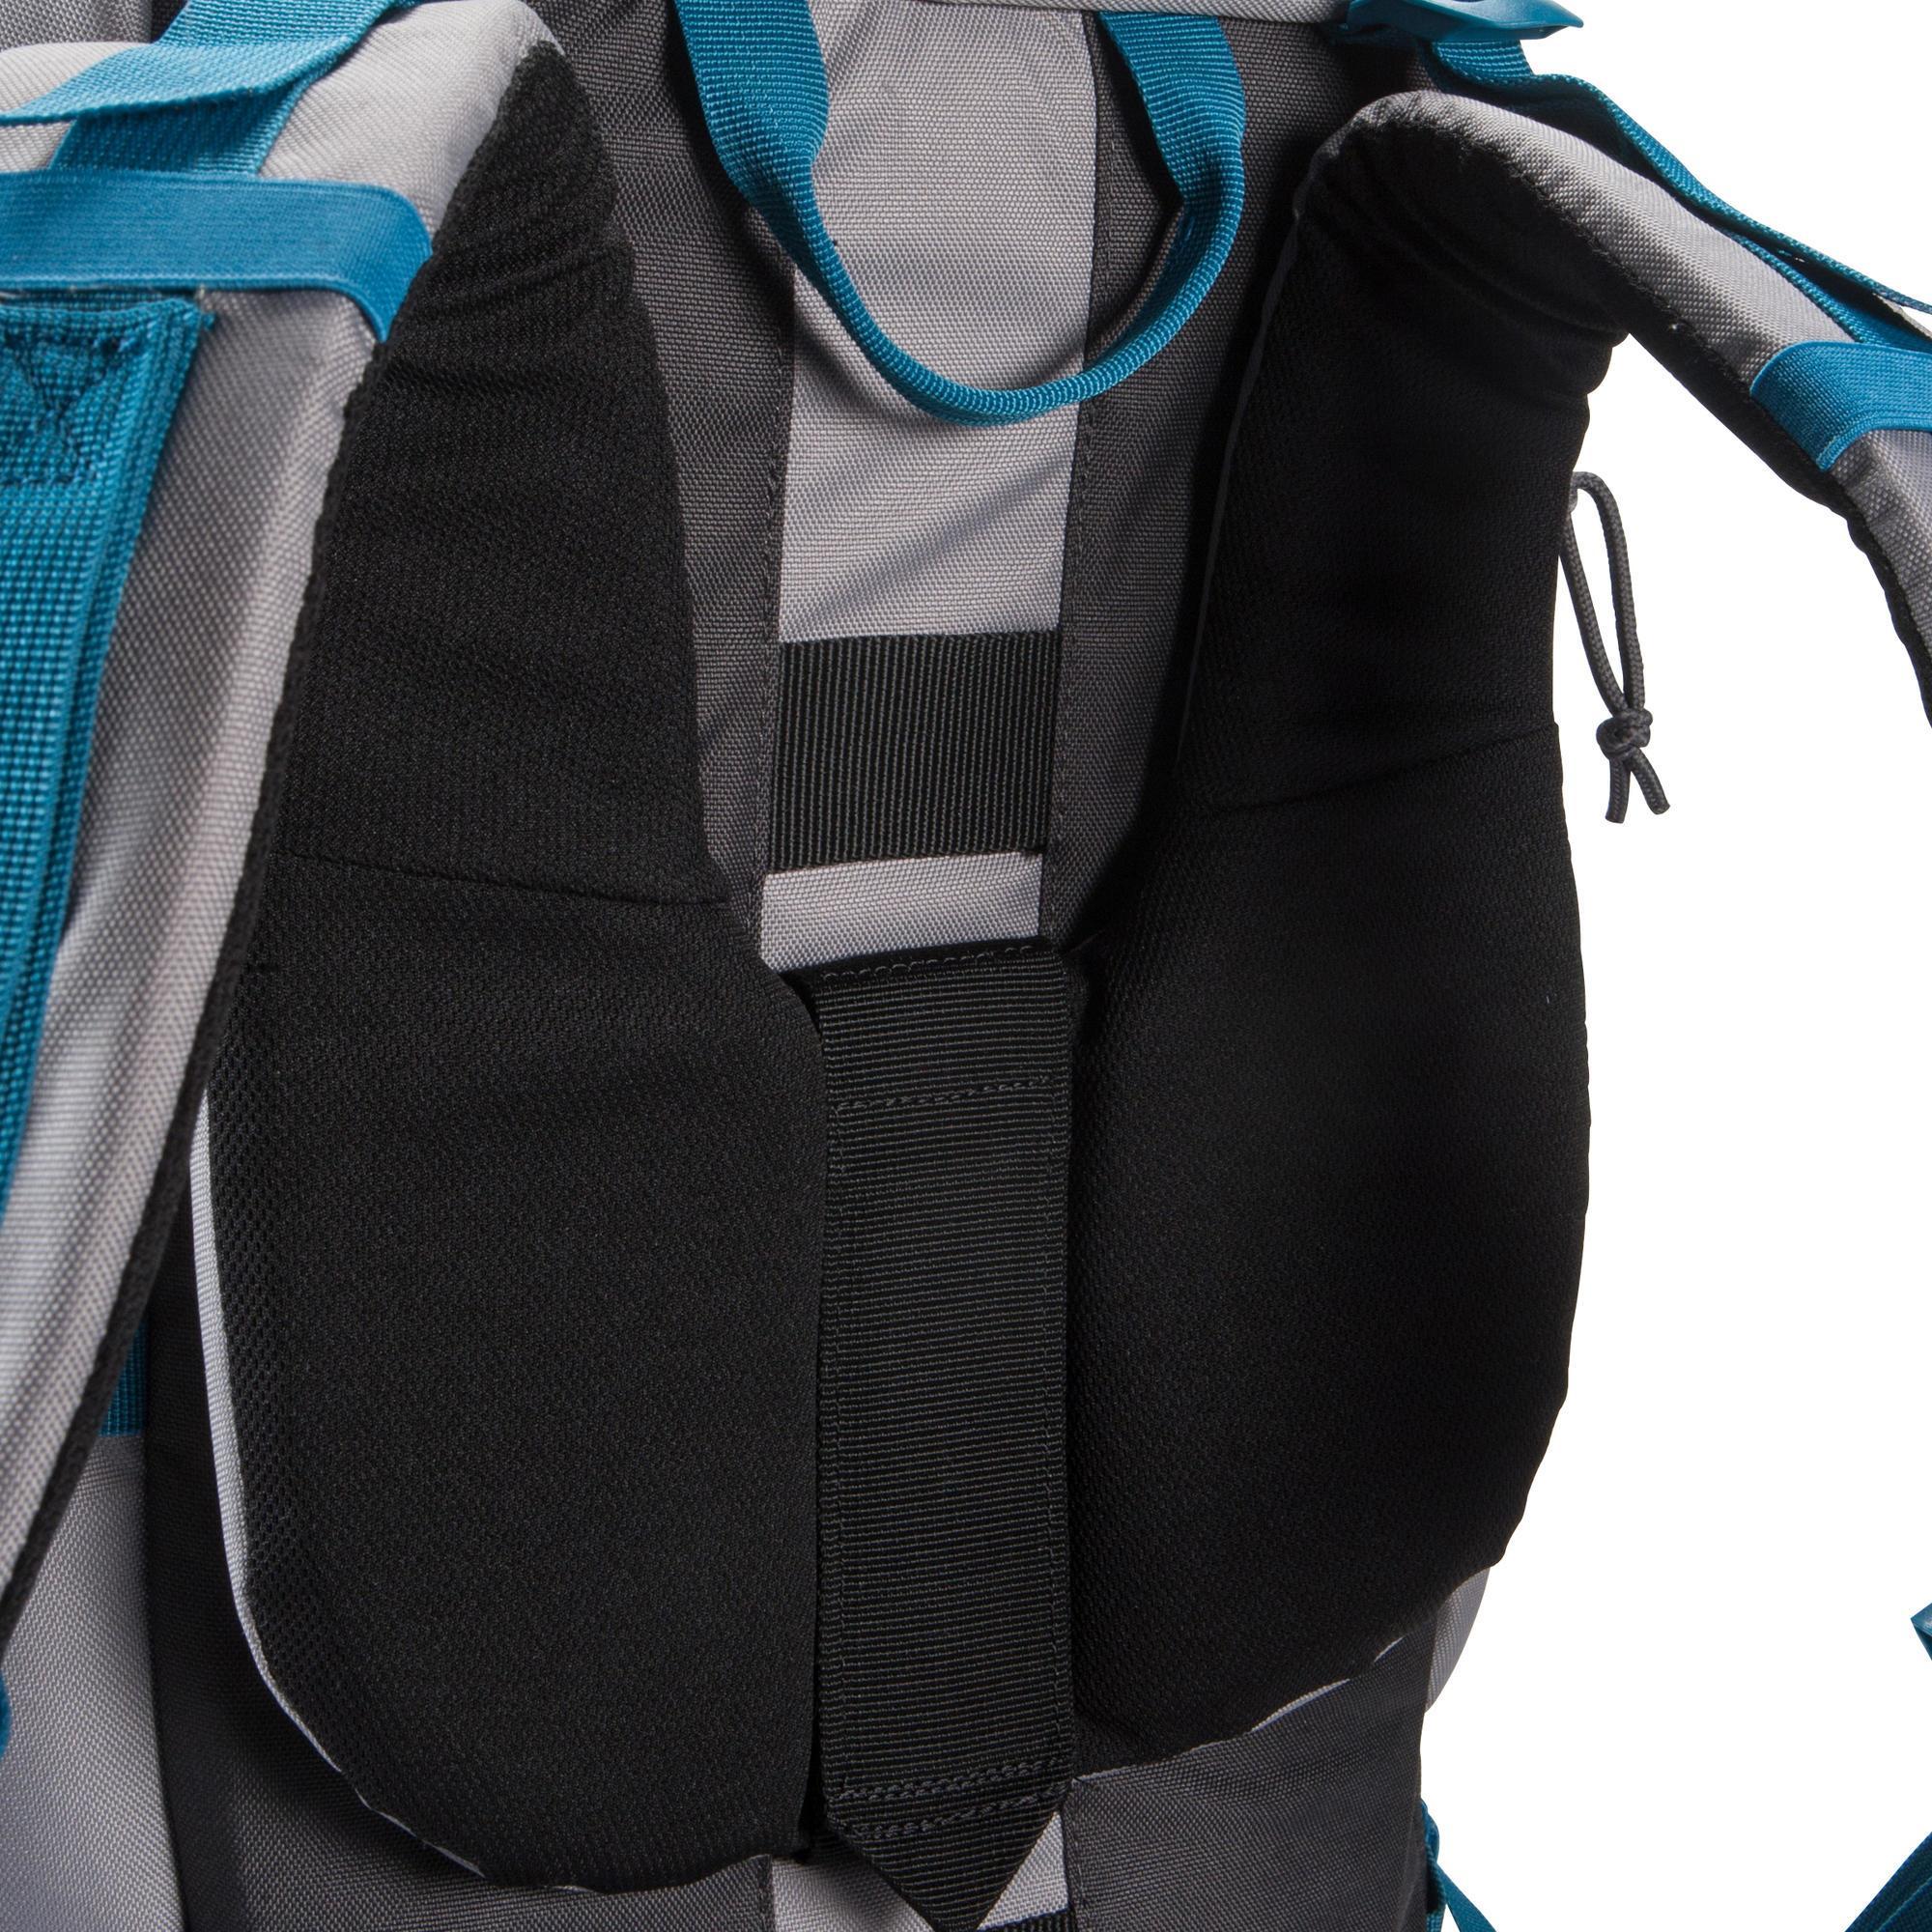 backpack forclaz 50 grey